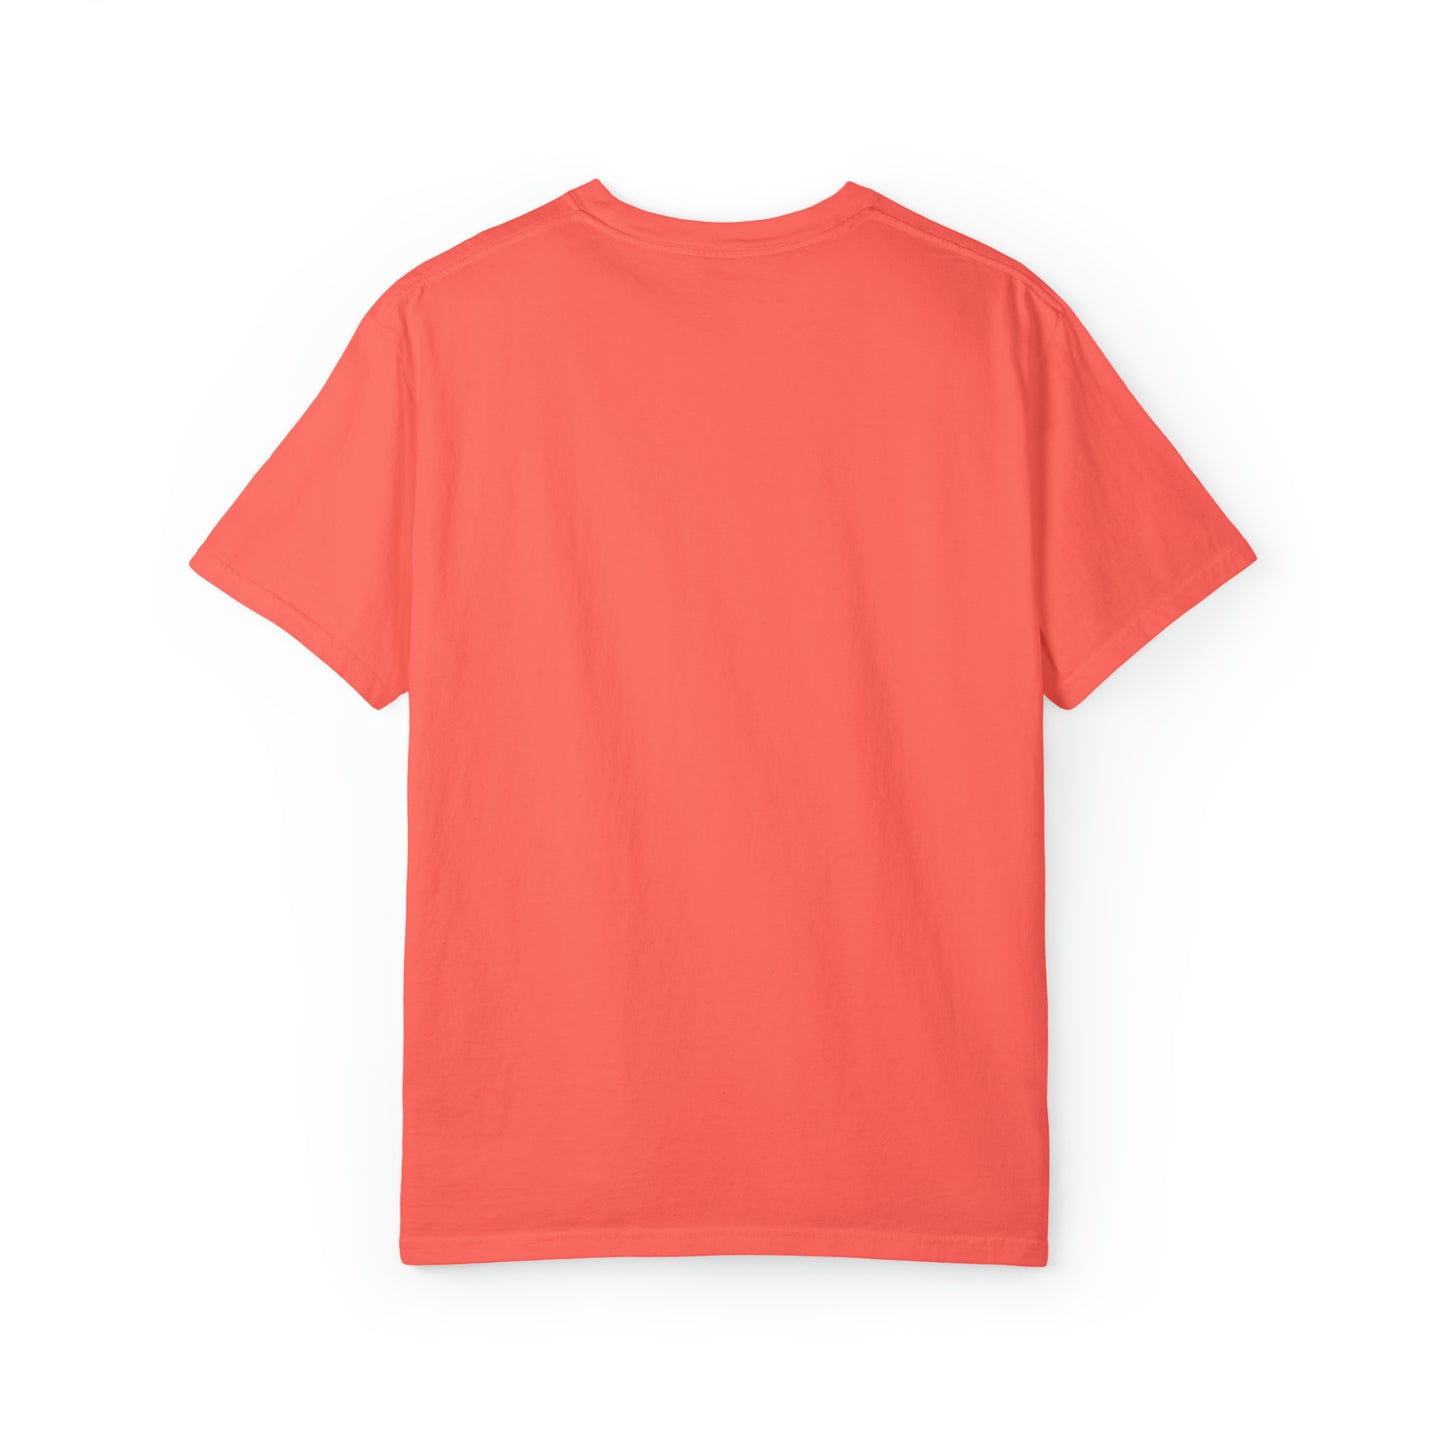 BEST COUSIN EVER T SHIRT Unisex Garment-Dyed T-shirt